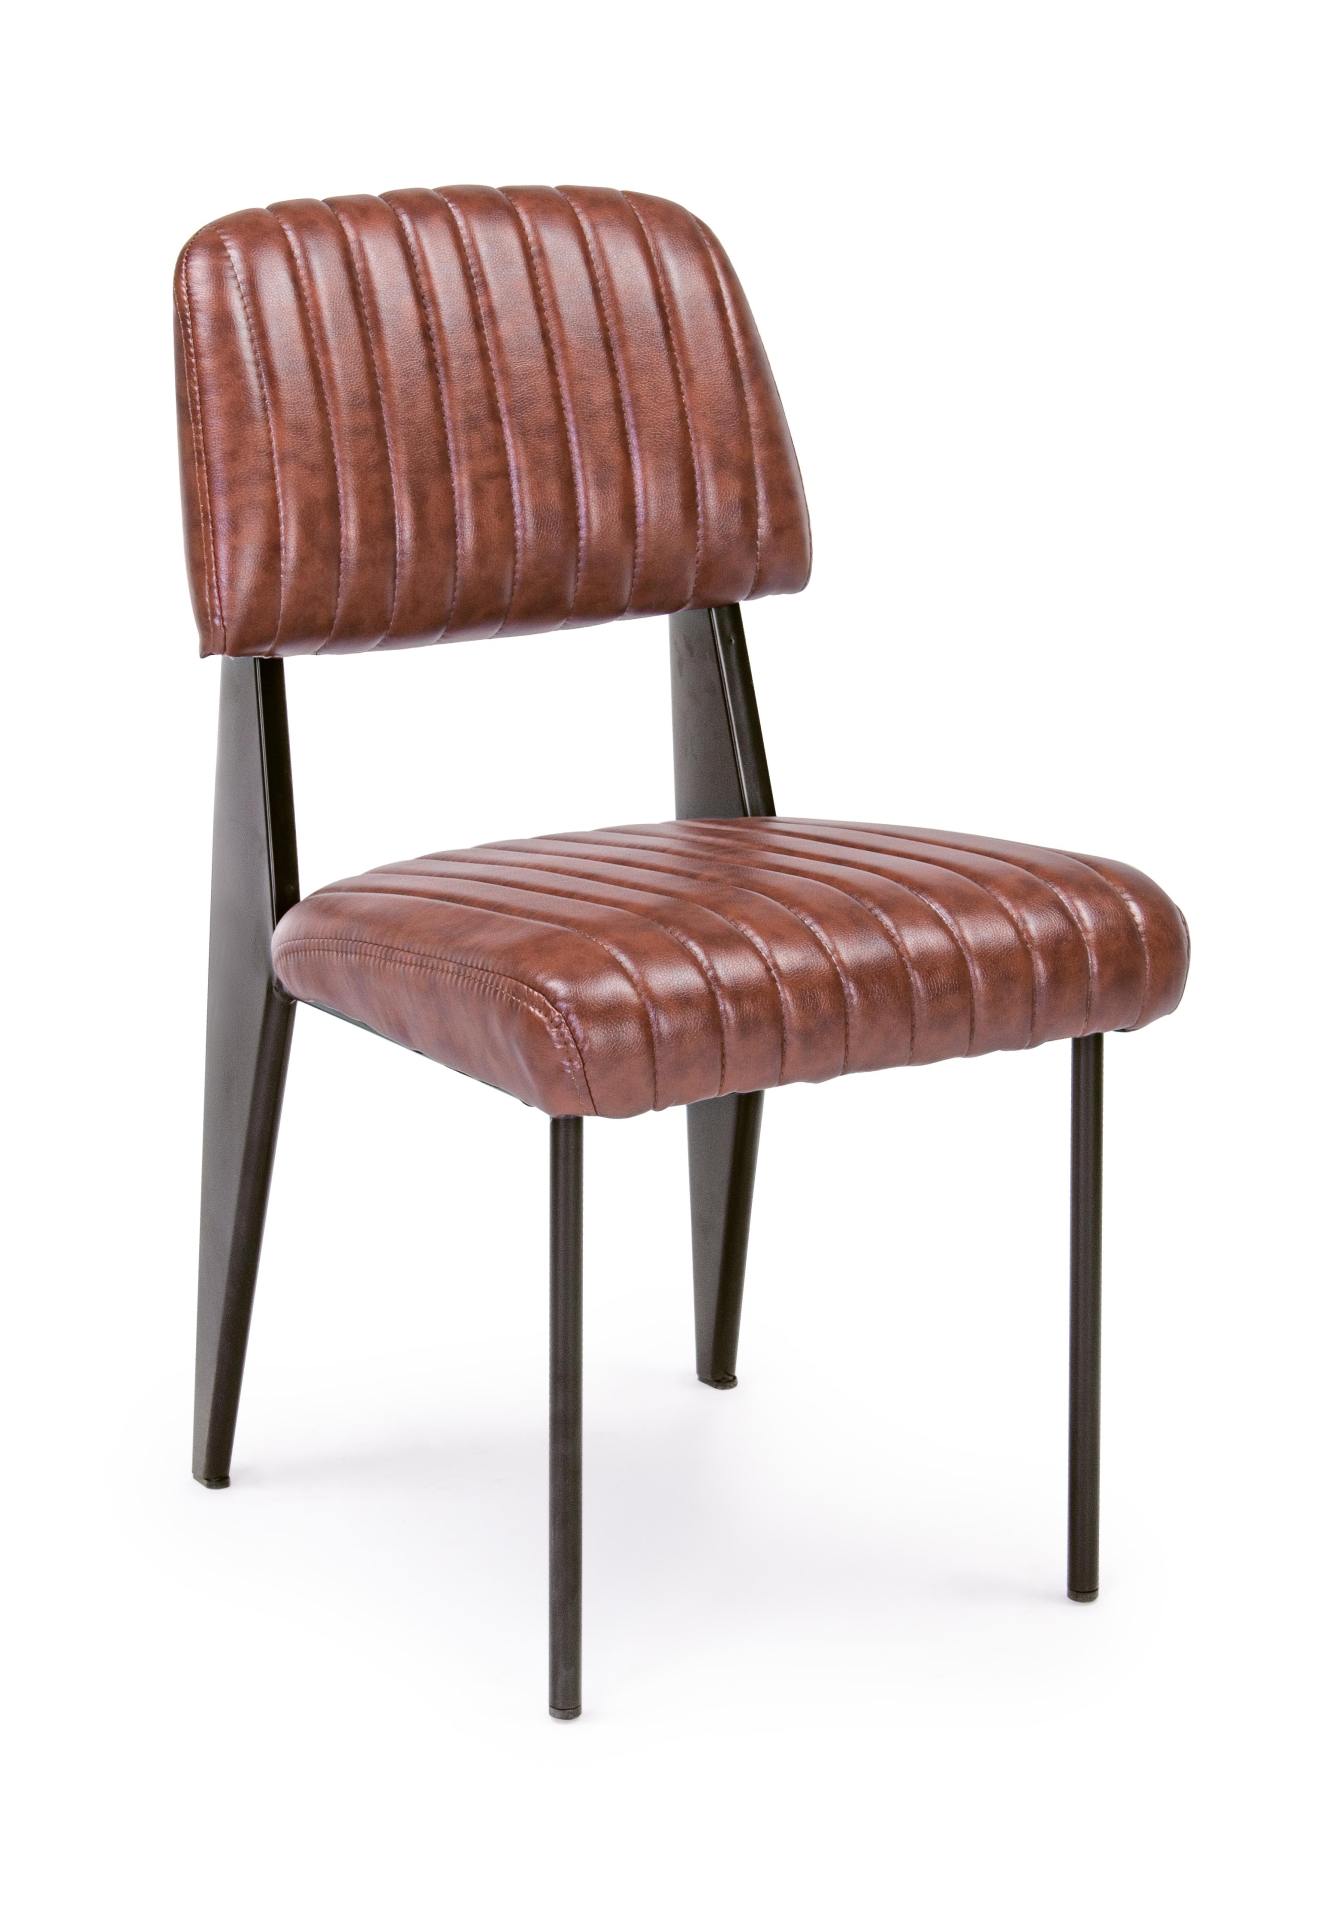 Der Stuhl Nelly überzeugt mit seinem industriellen Design. Gefertigt wurde der Stuhl aus Kunstleder, welches einen Cognac Farbton besitzt. Das Gestell ist aus Stahl und ist schwarz. Die Sitzhöhe beträgt 45 cm.